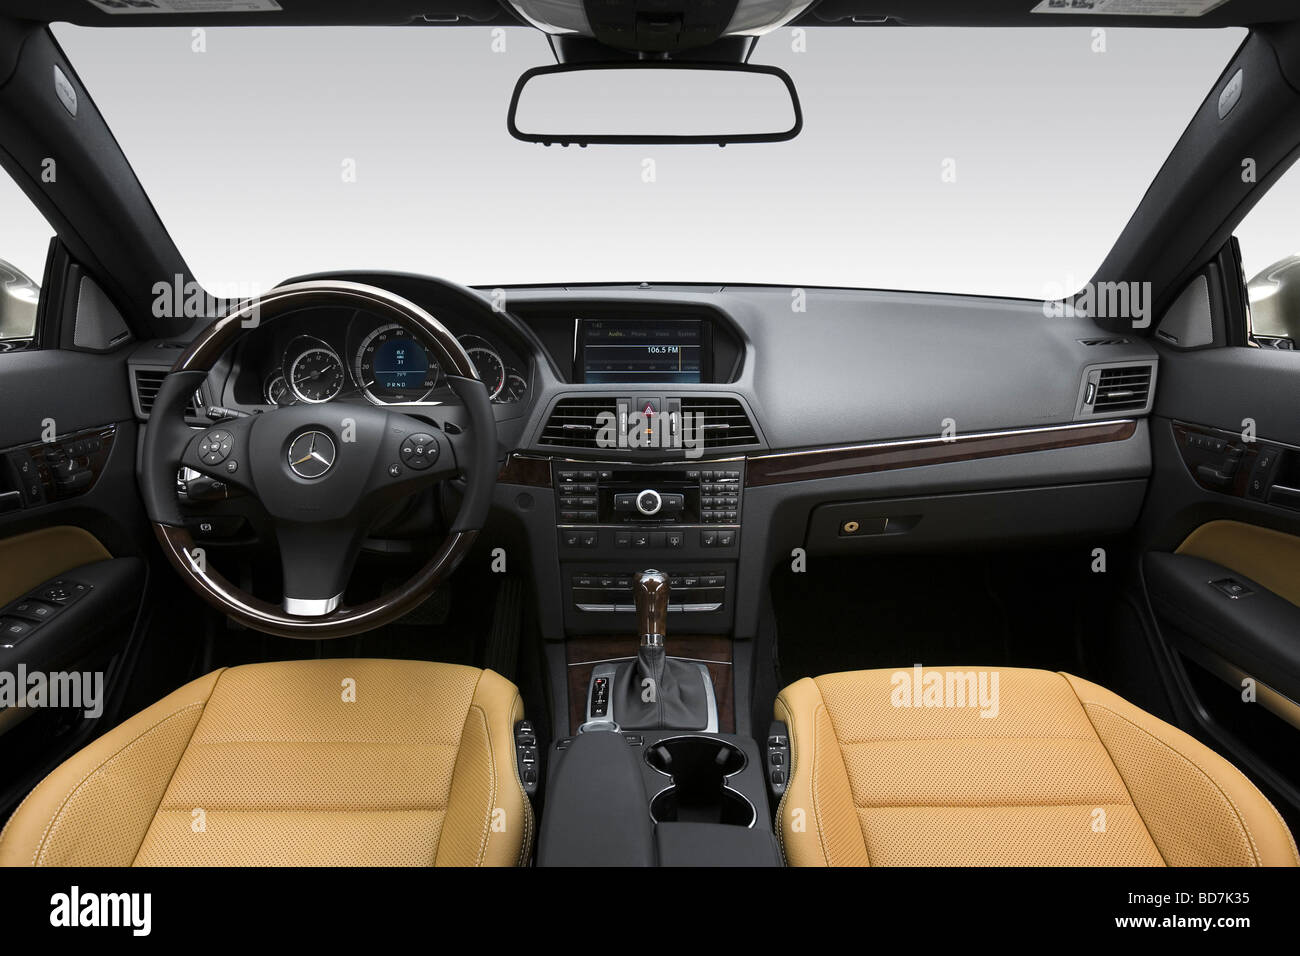 2010 Mercedes-Benz E-Class E550 in Gray - Dashboard, center console, gear shifter view Stock Photo